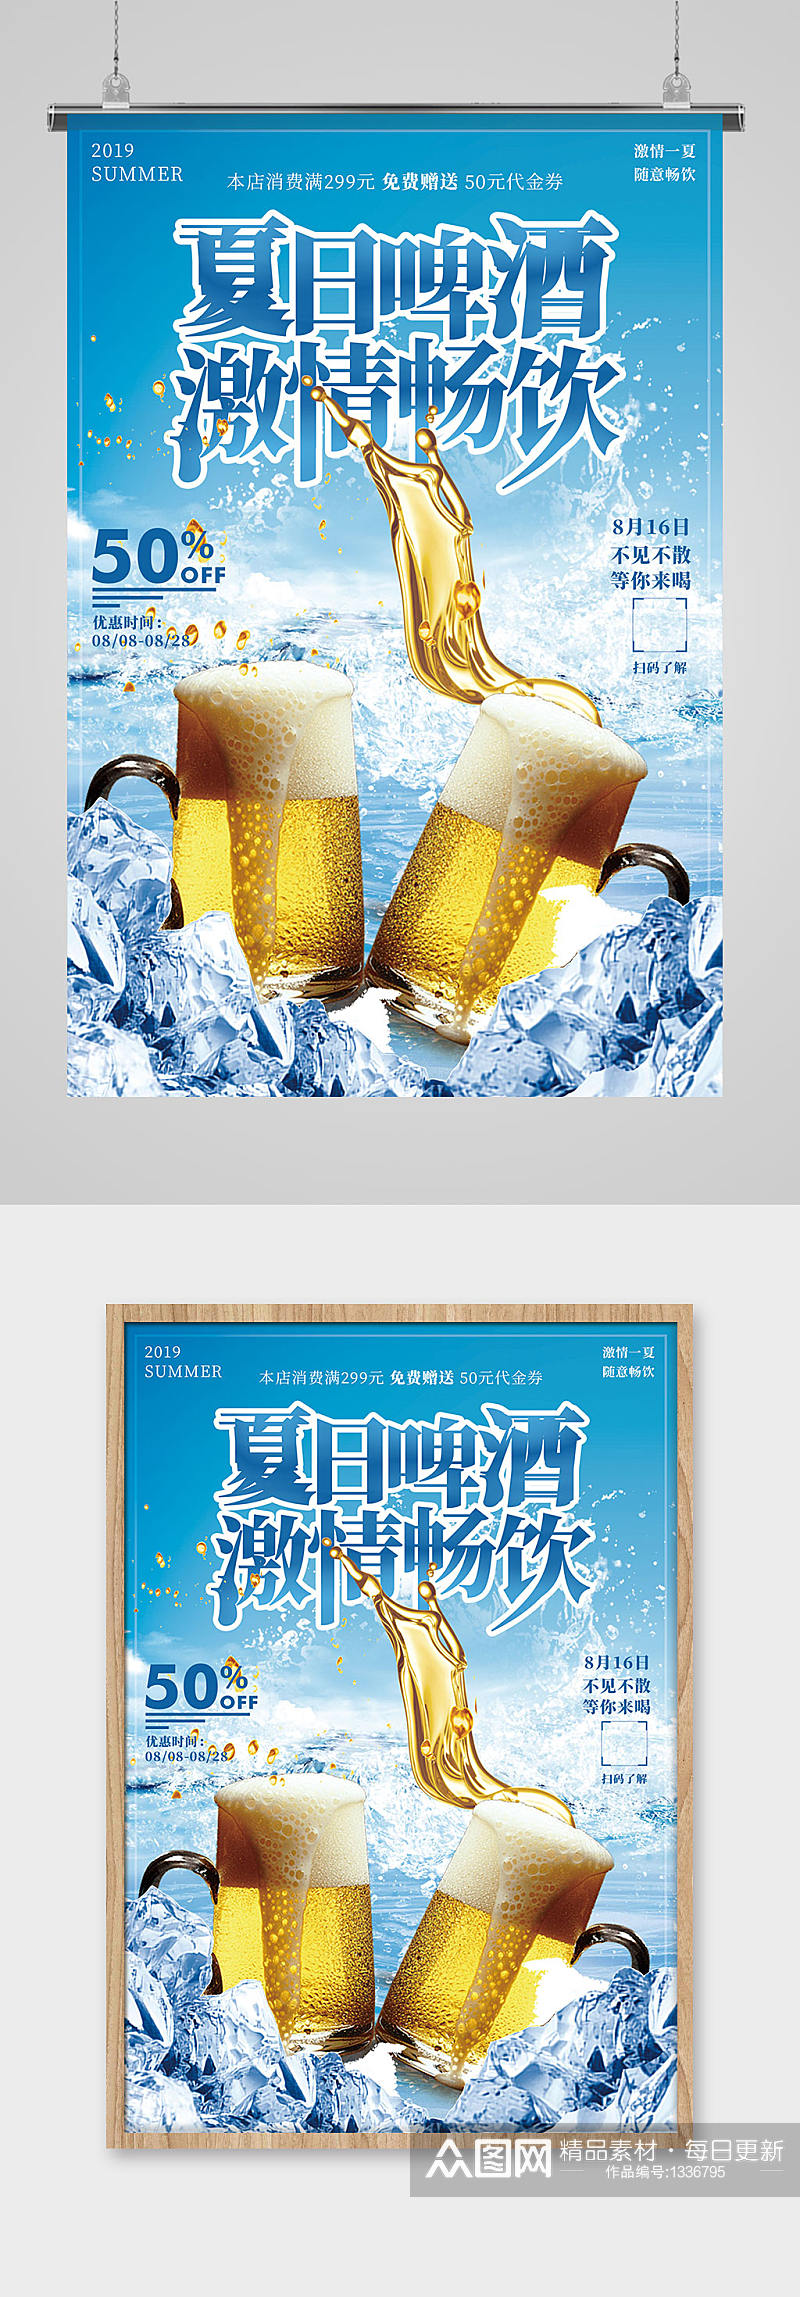 免费畅饮啤酒促销宣传海报素材